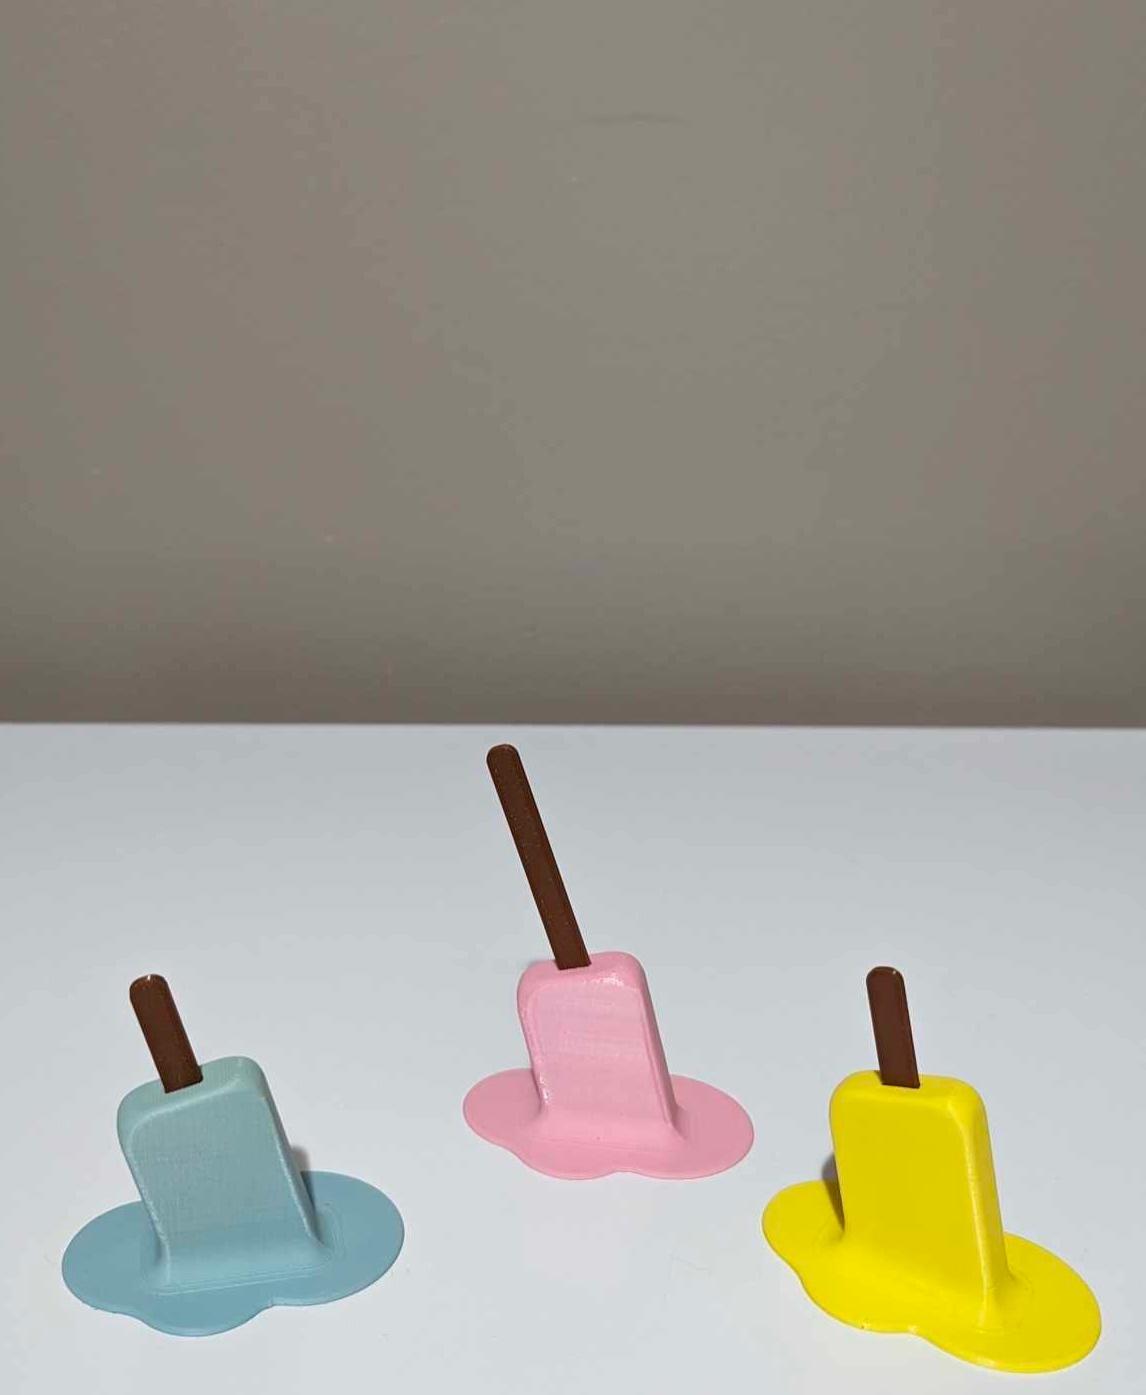 Melting Popsicle Prop 3d model